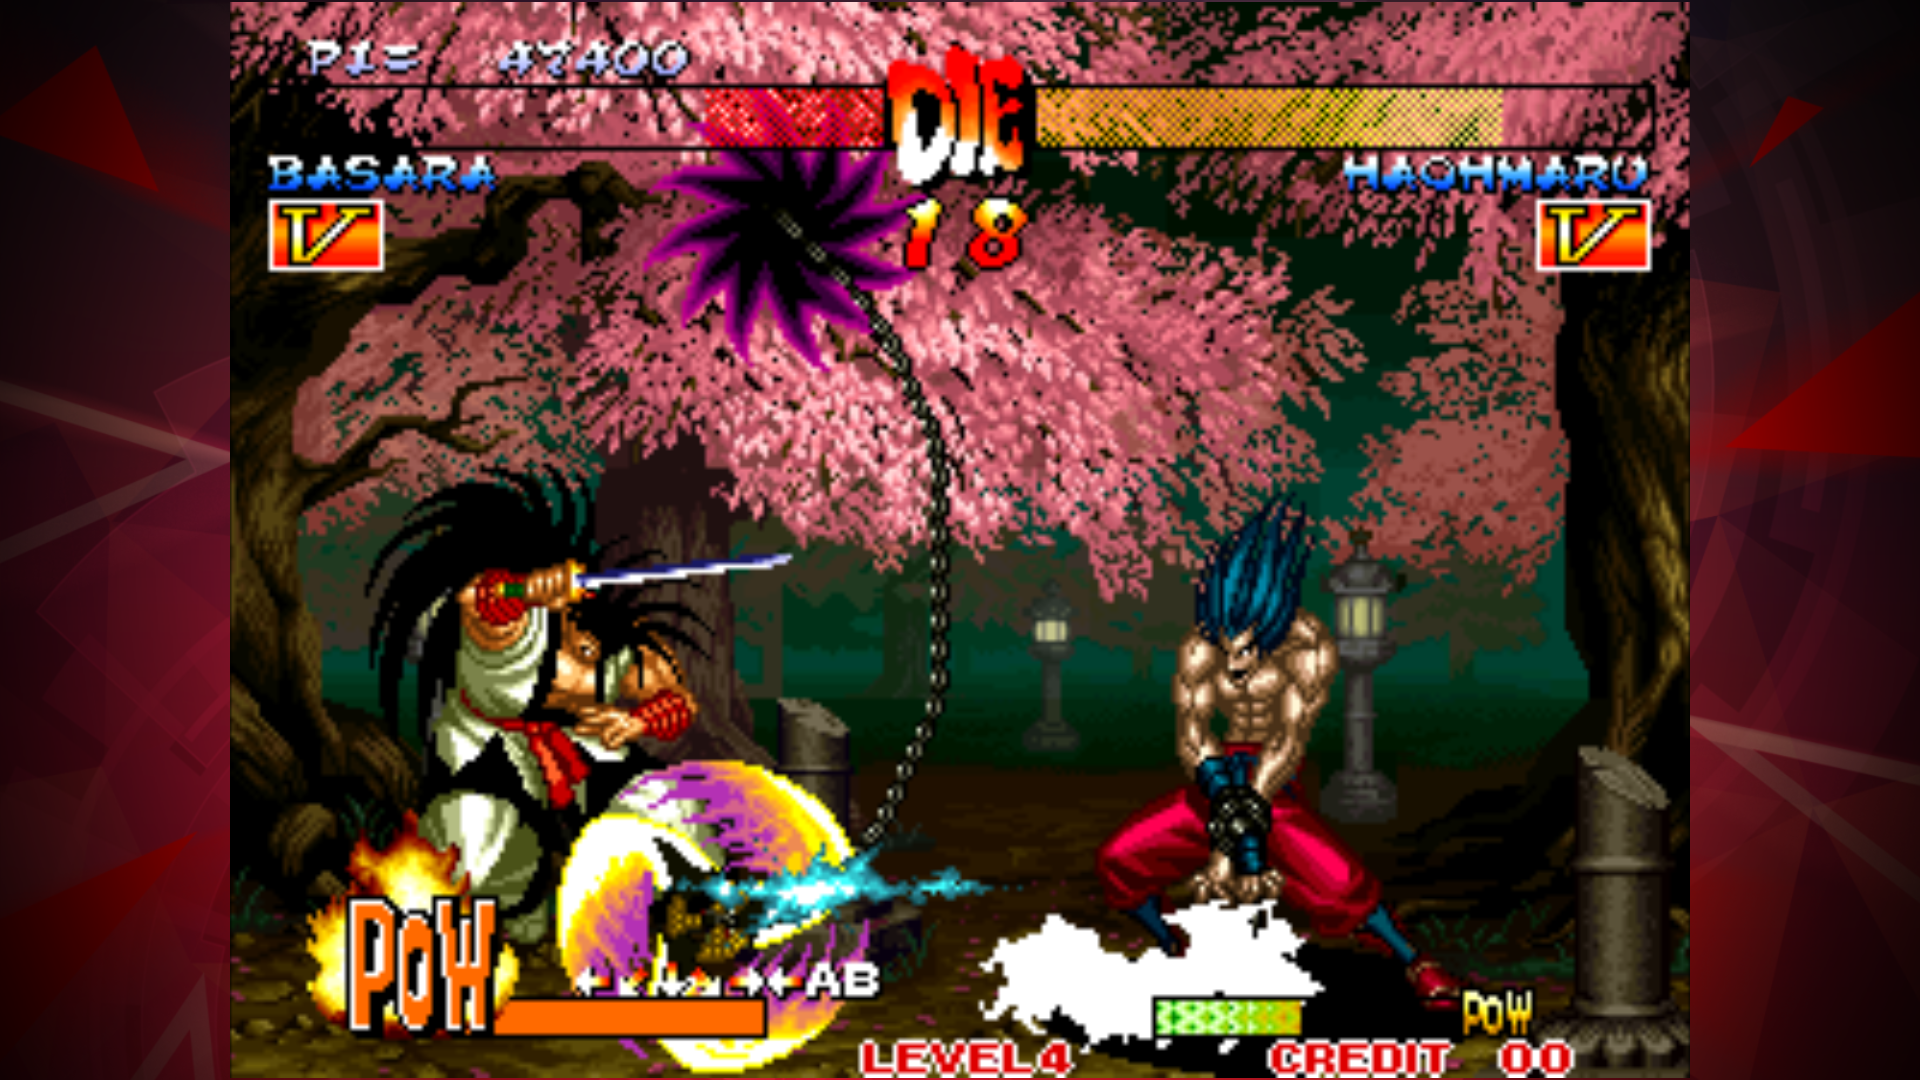 Screenshot of SAMURAI SHODOWN III ACA NEOGEO